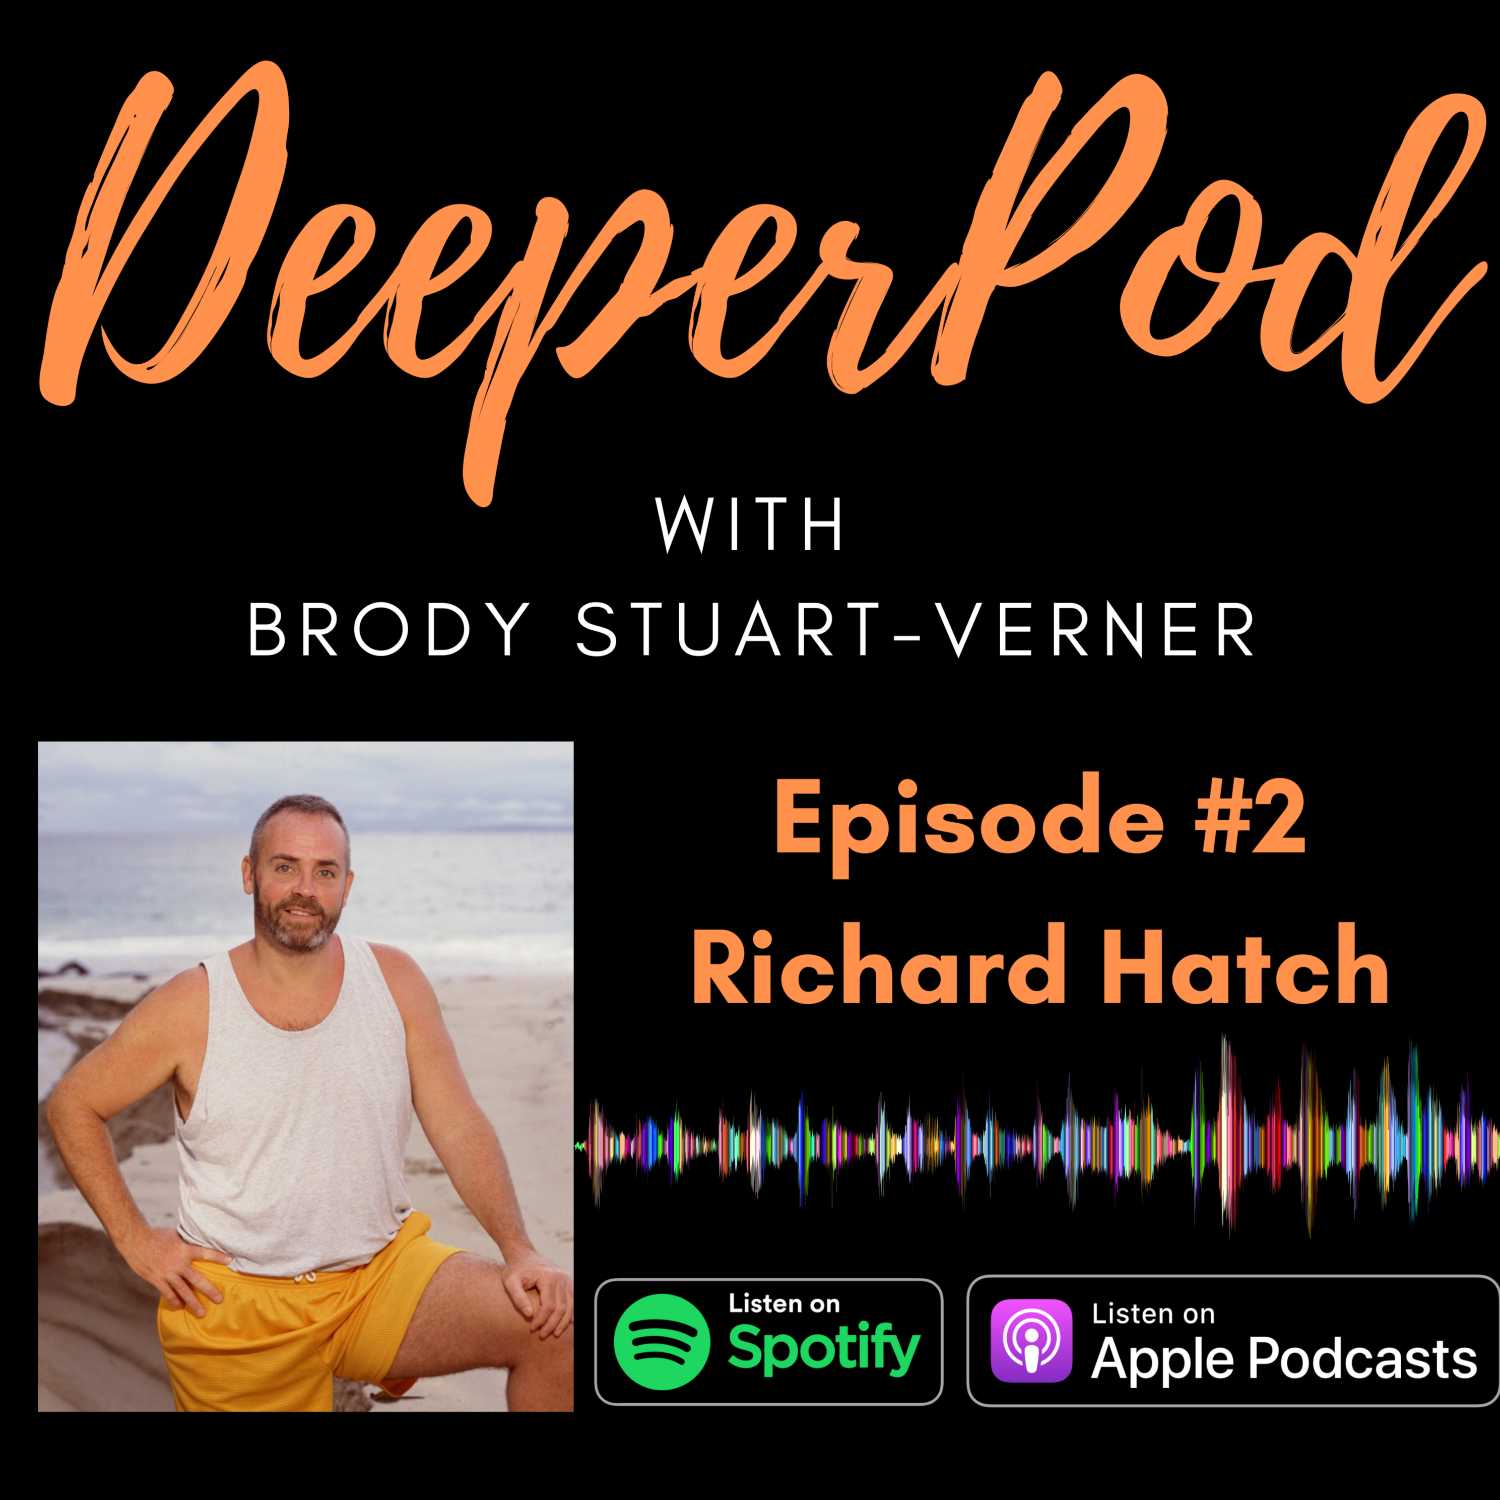 DeeperPod #2: Richard Hatch